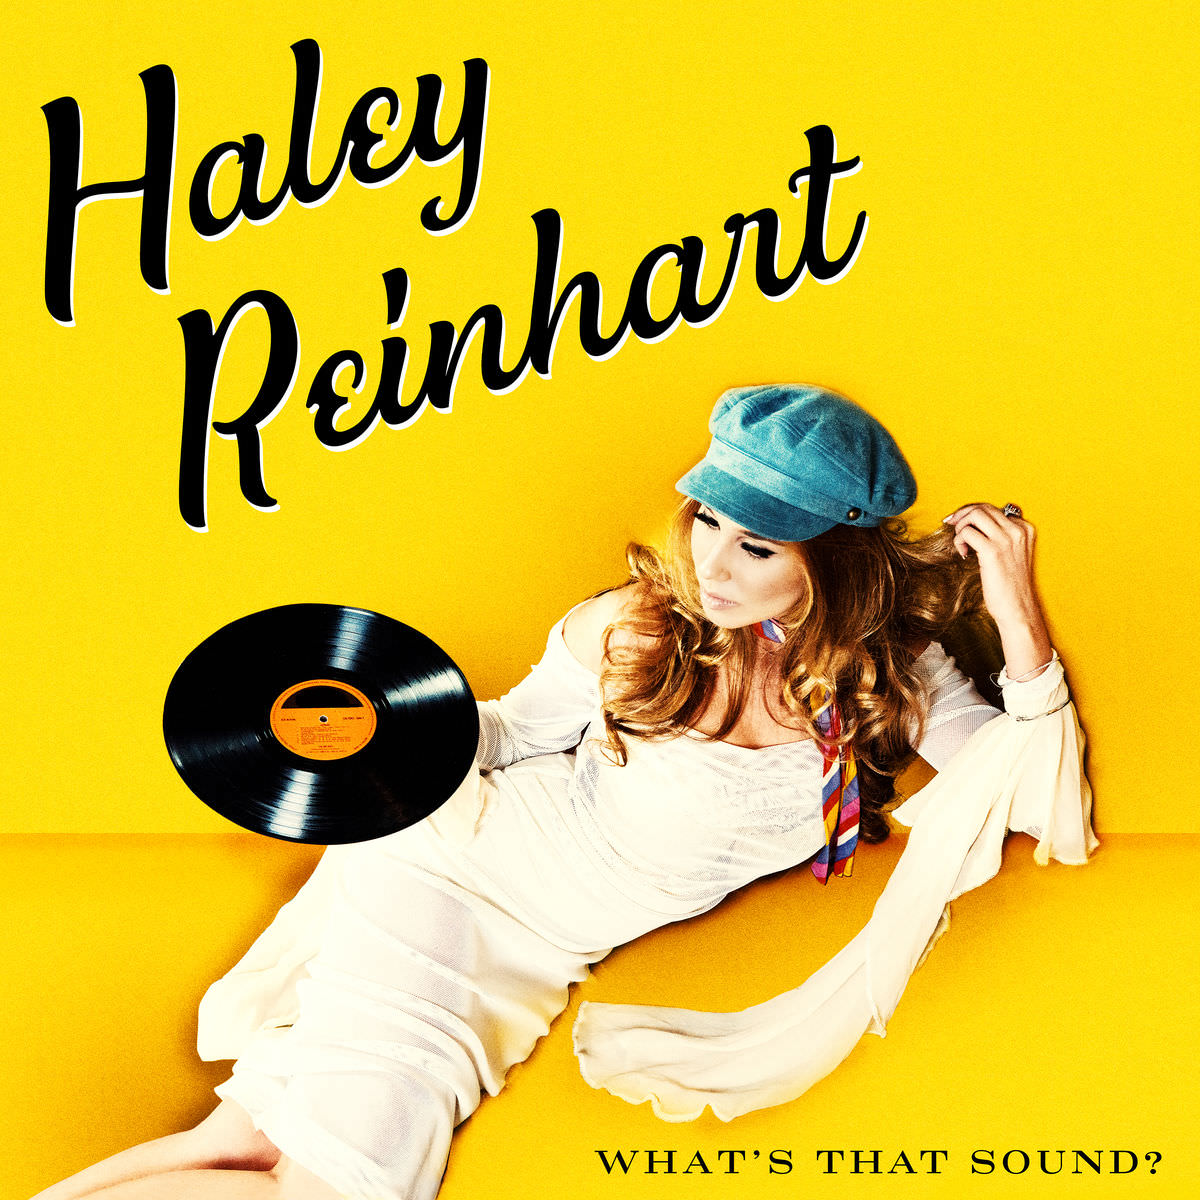 Haley Reinhart – What’s That Sound? (2017) [Qobuz FLAC 24bit/96kHz]